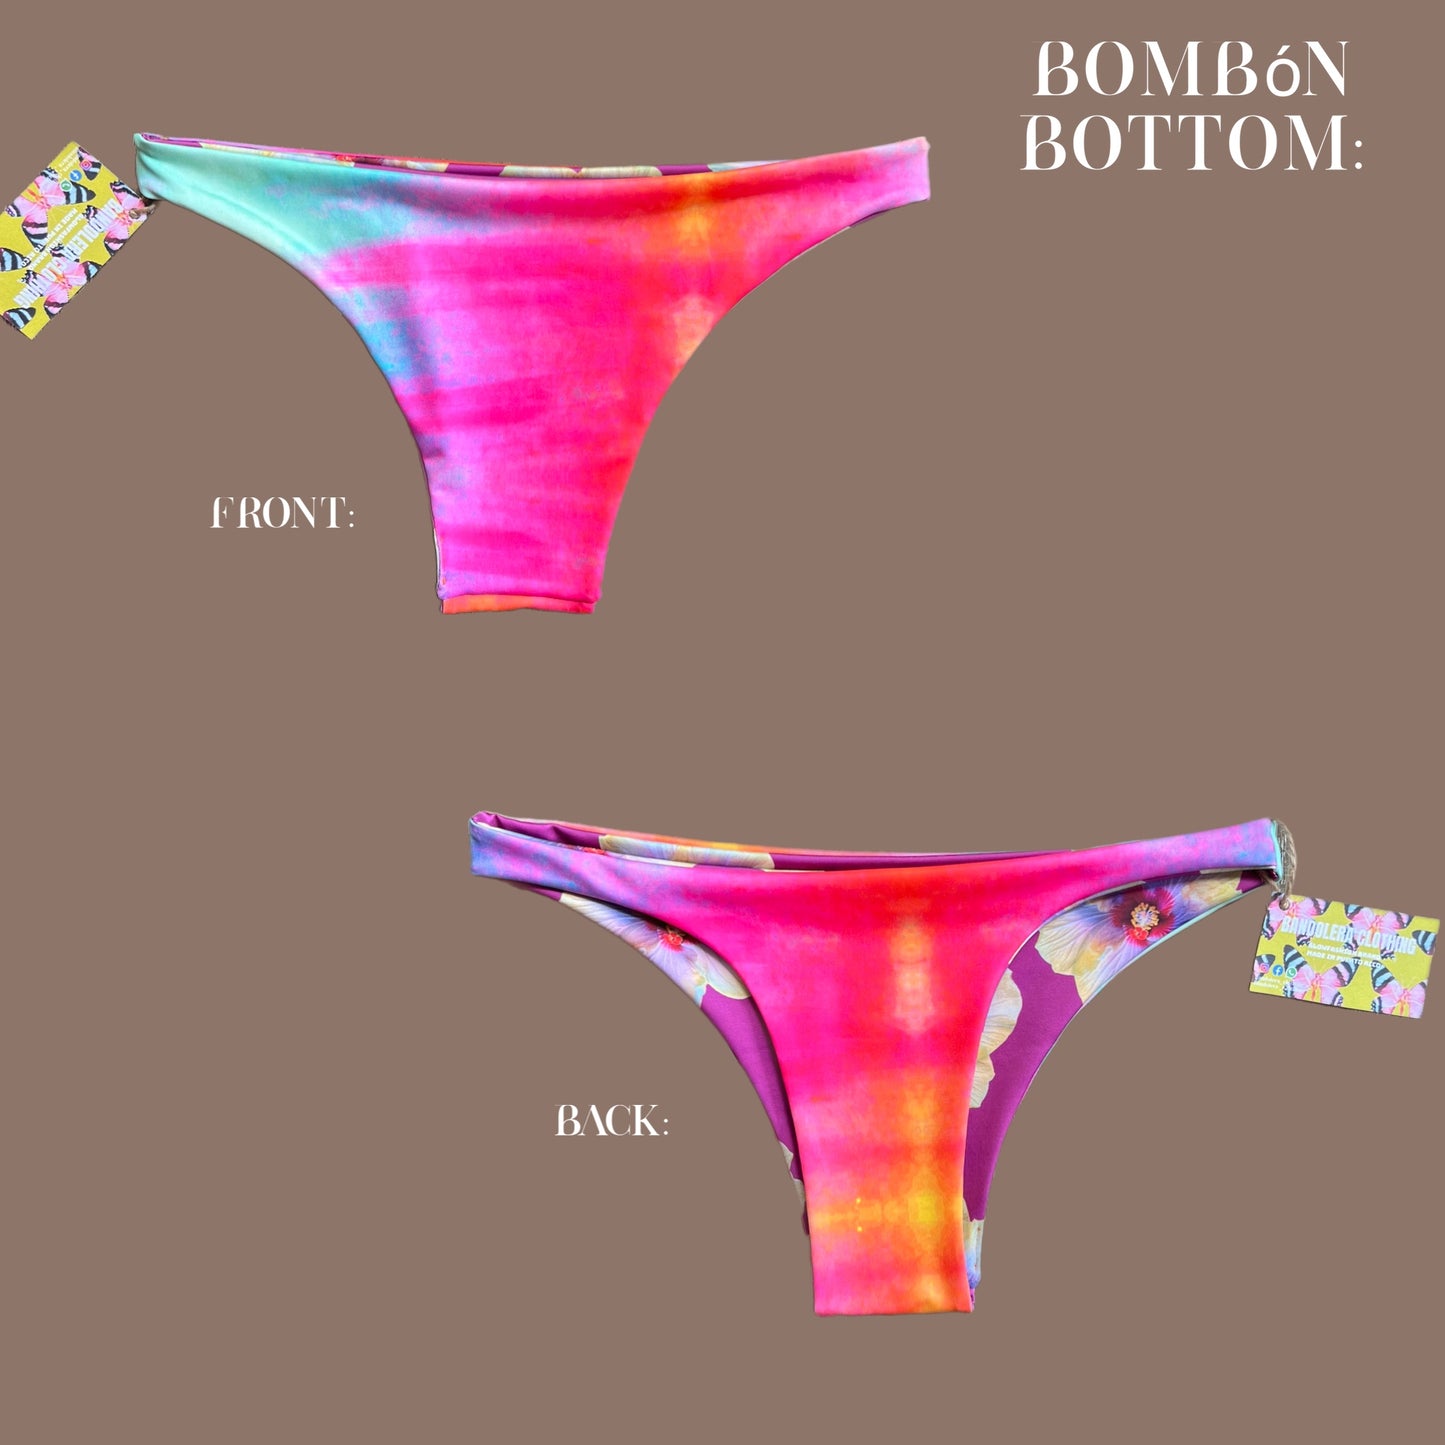 Bombón Bottom ( solo bottom)